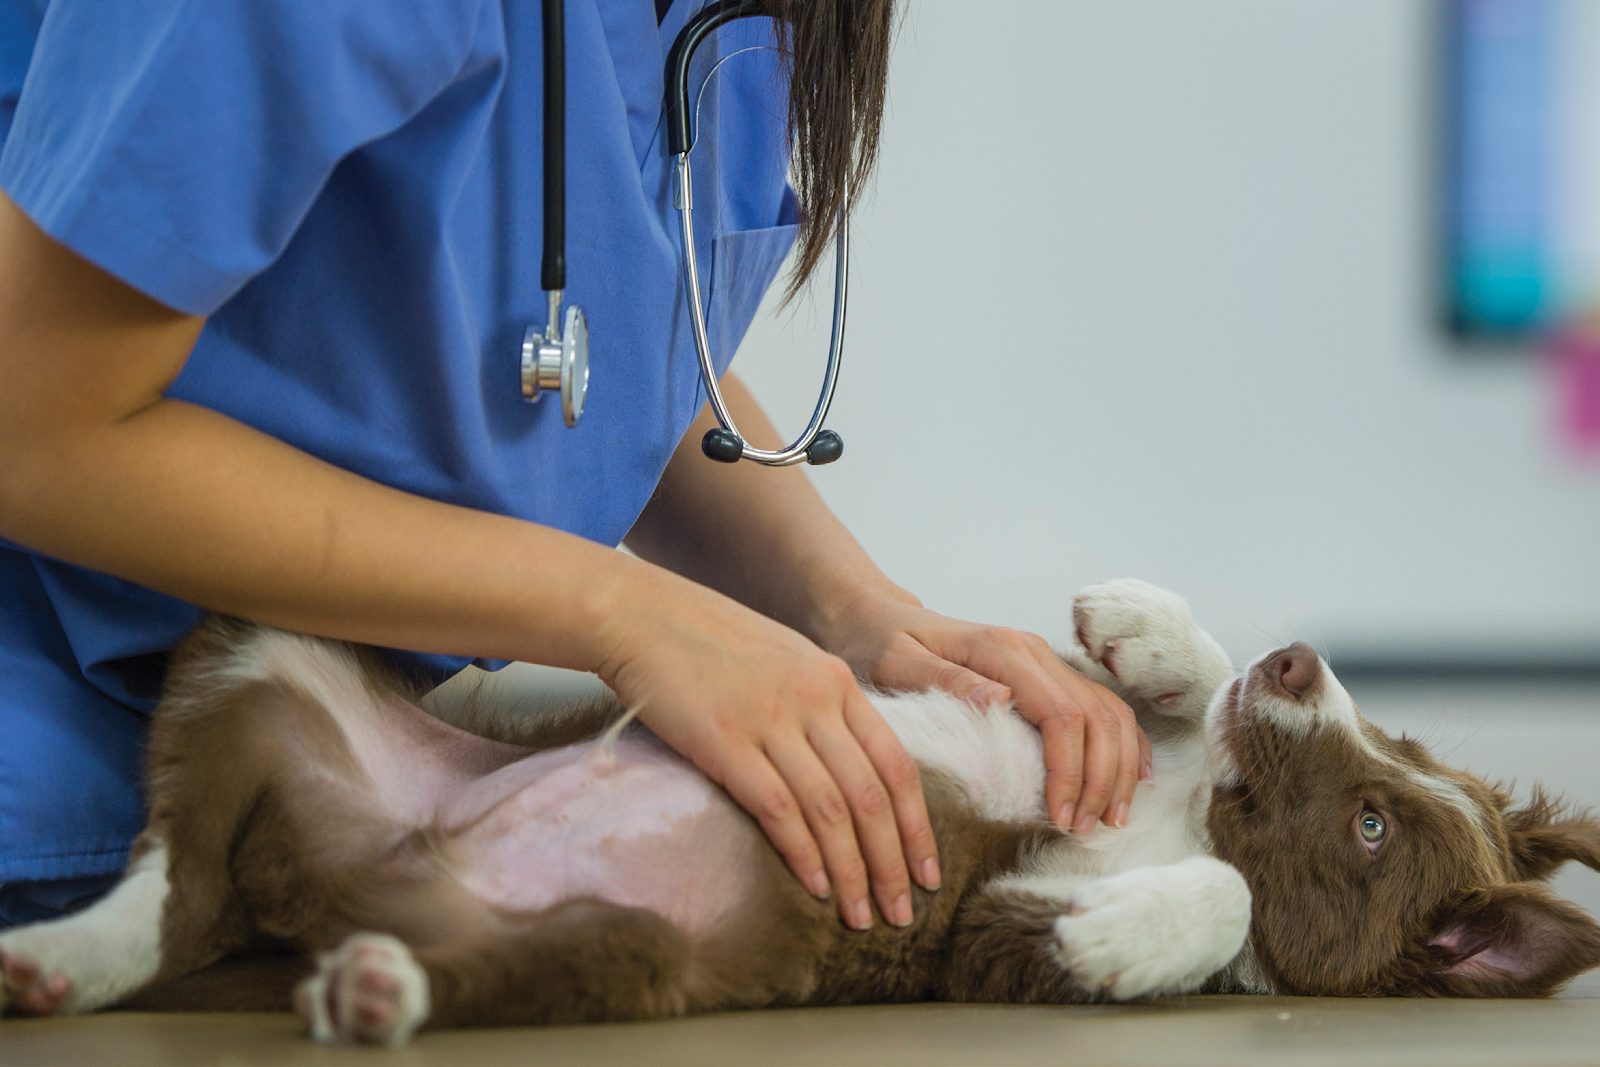 Nếu không có nhiều kinh nghiệm hãy đưa thú cưng tới gặp bác sĩ sớm nhất để được điều trị sớm